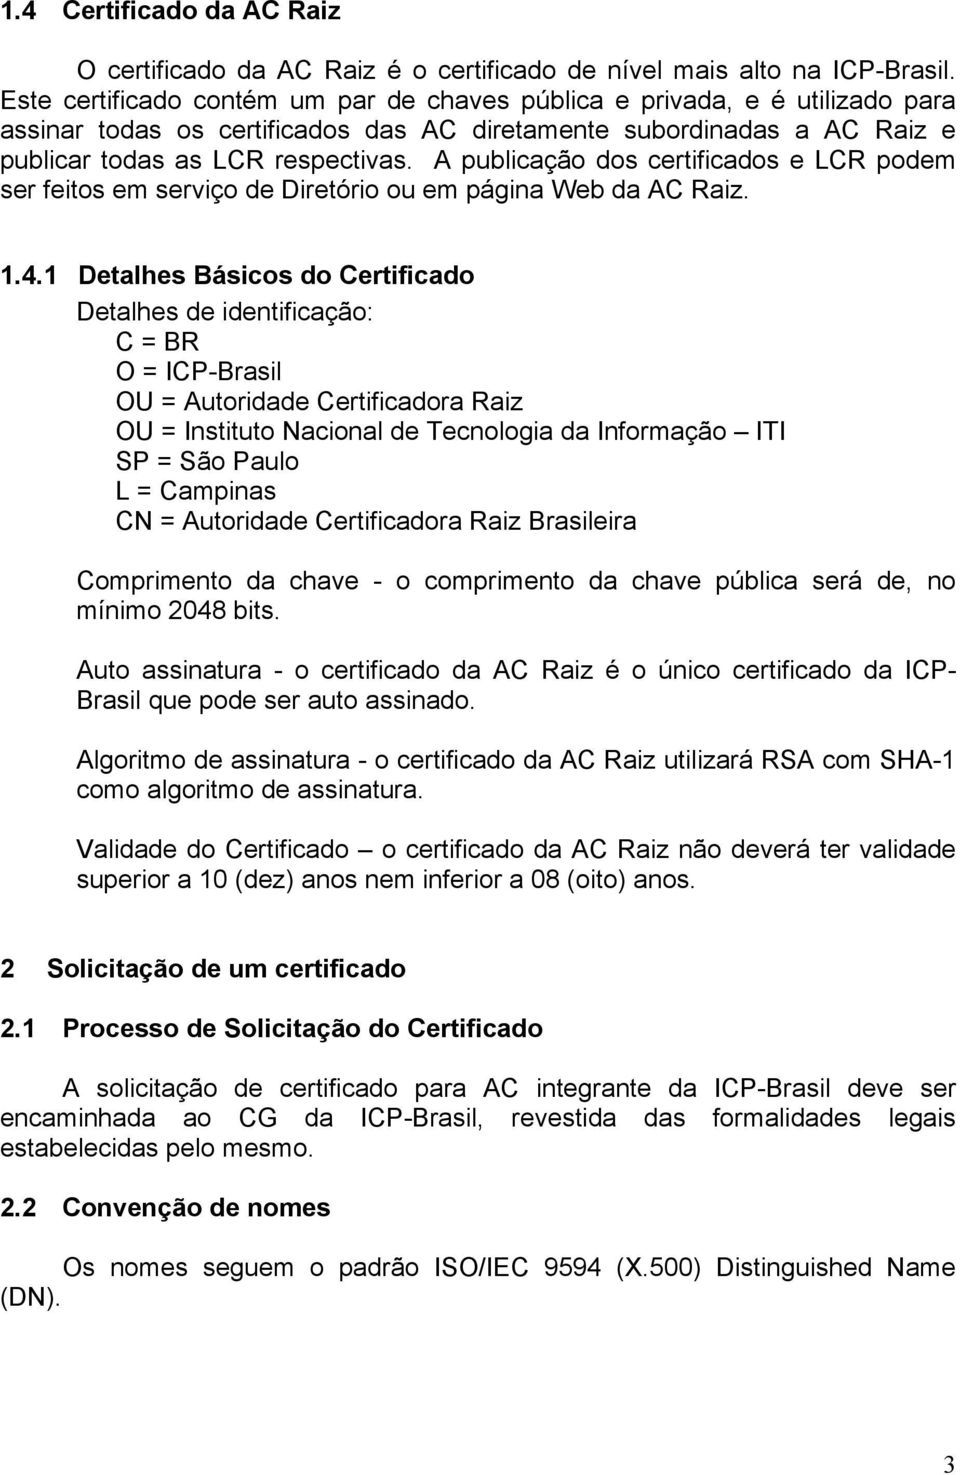 A publicação dos certificados e LCR podem ser feitos em serviço de Diretório ou em página Web da AC Raiz. 1.4.